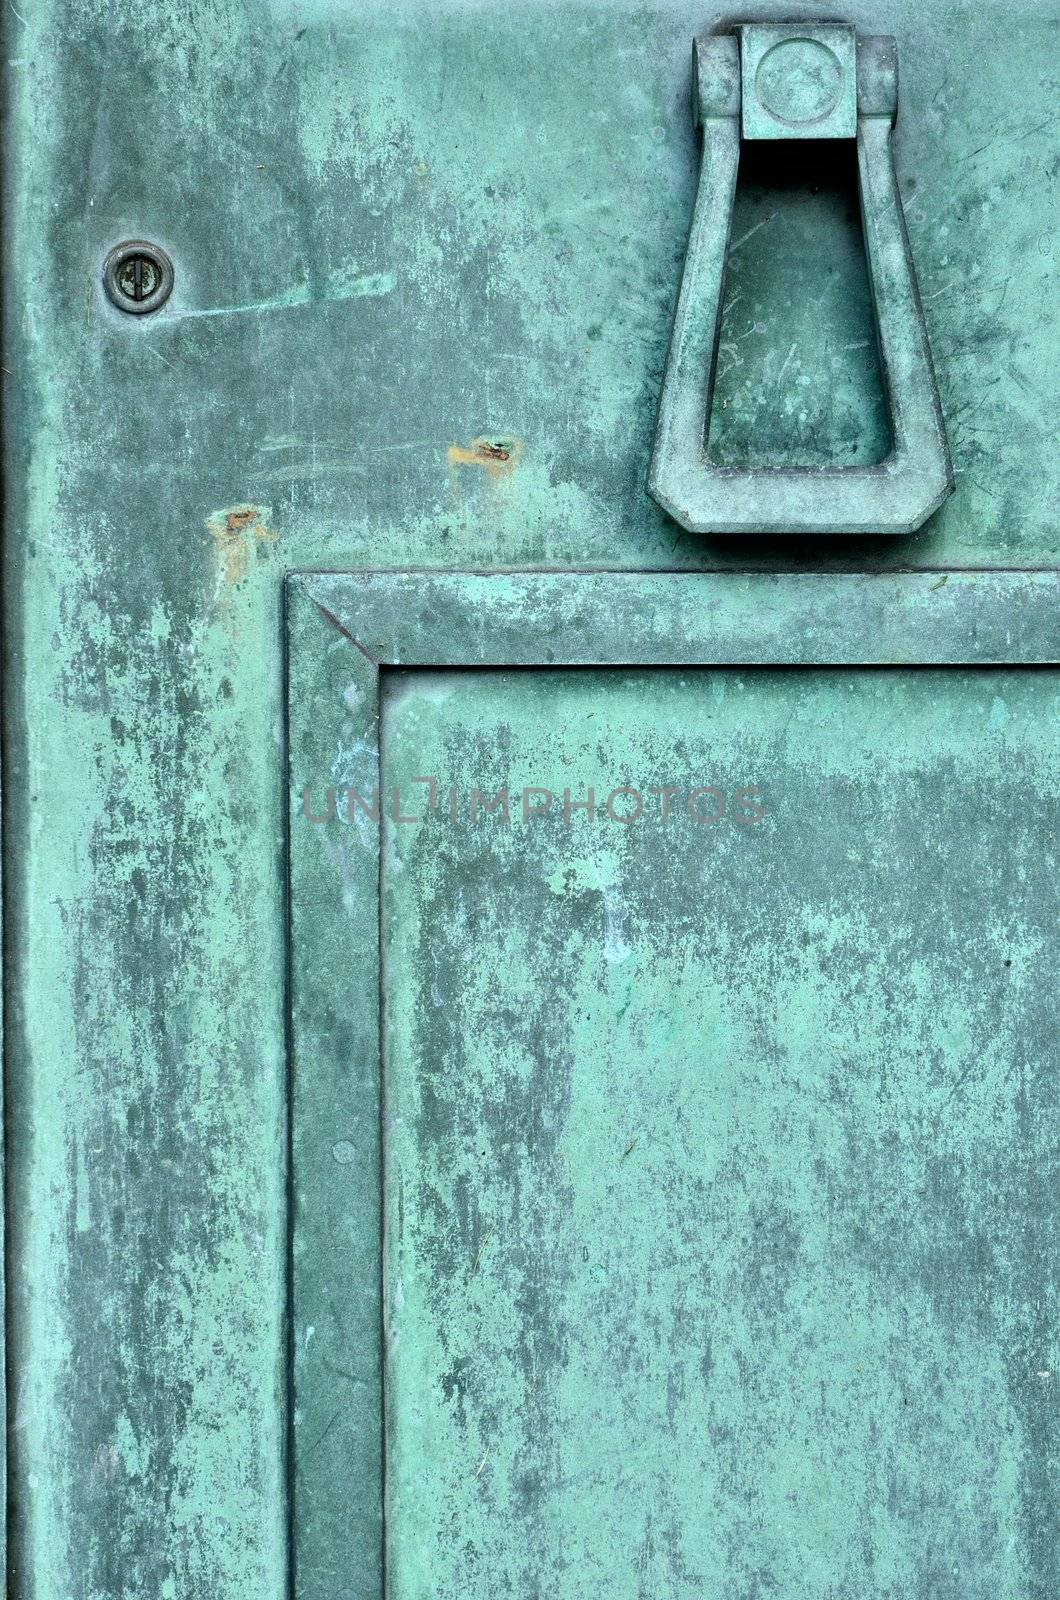 Tarnished Brass Mausoleum Door by brm1949